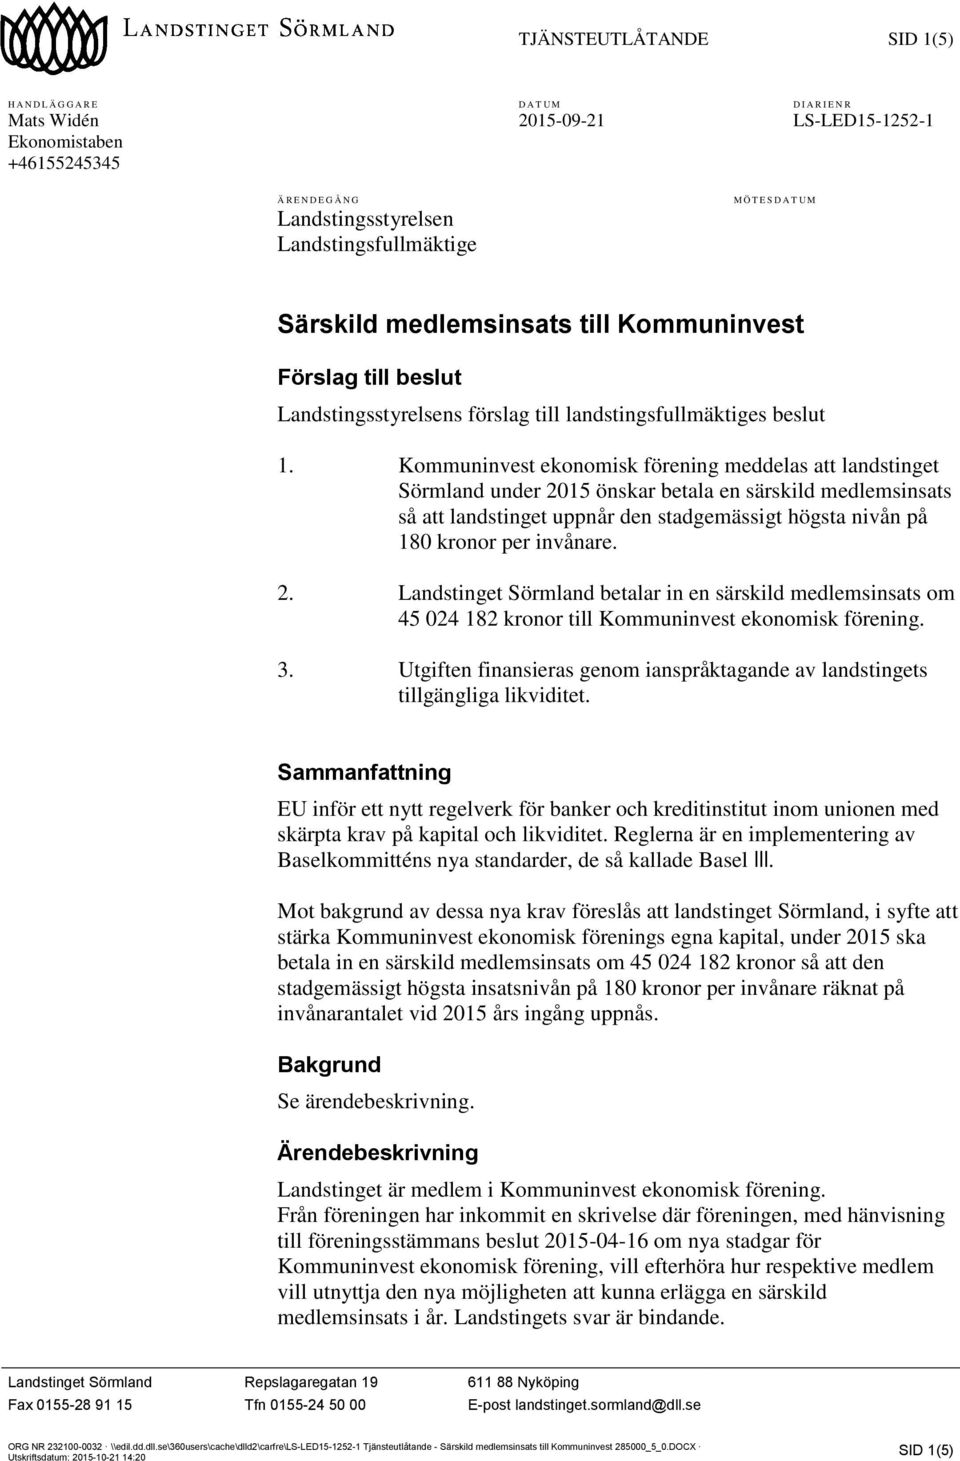 Kommuninvest ekonomisk förening meddelas att landstinget Sörmland under 2015 önskar betala en särskild medlemsinsats så att landstinget uppnår den stadgemässigt högsta nivån på 180 kronor per